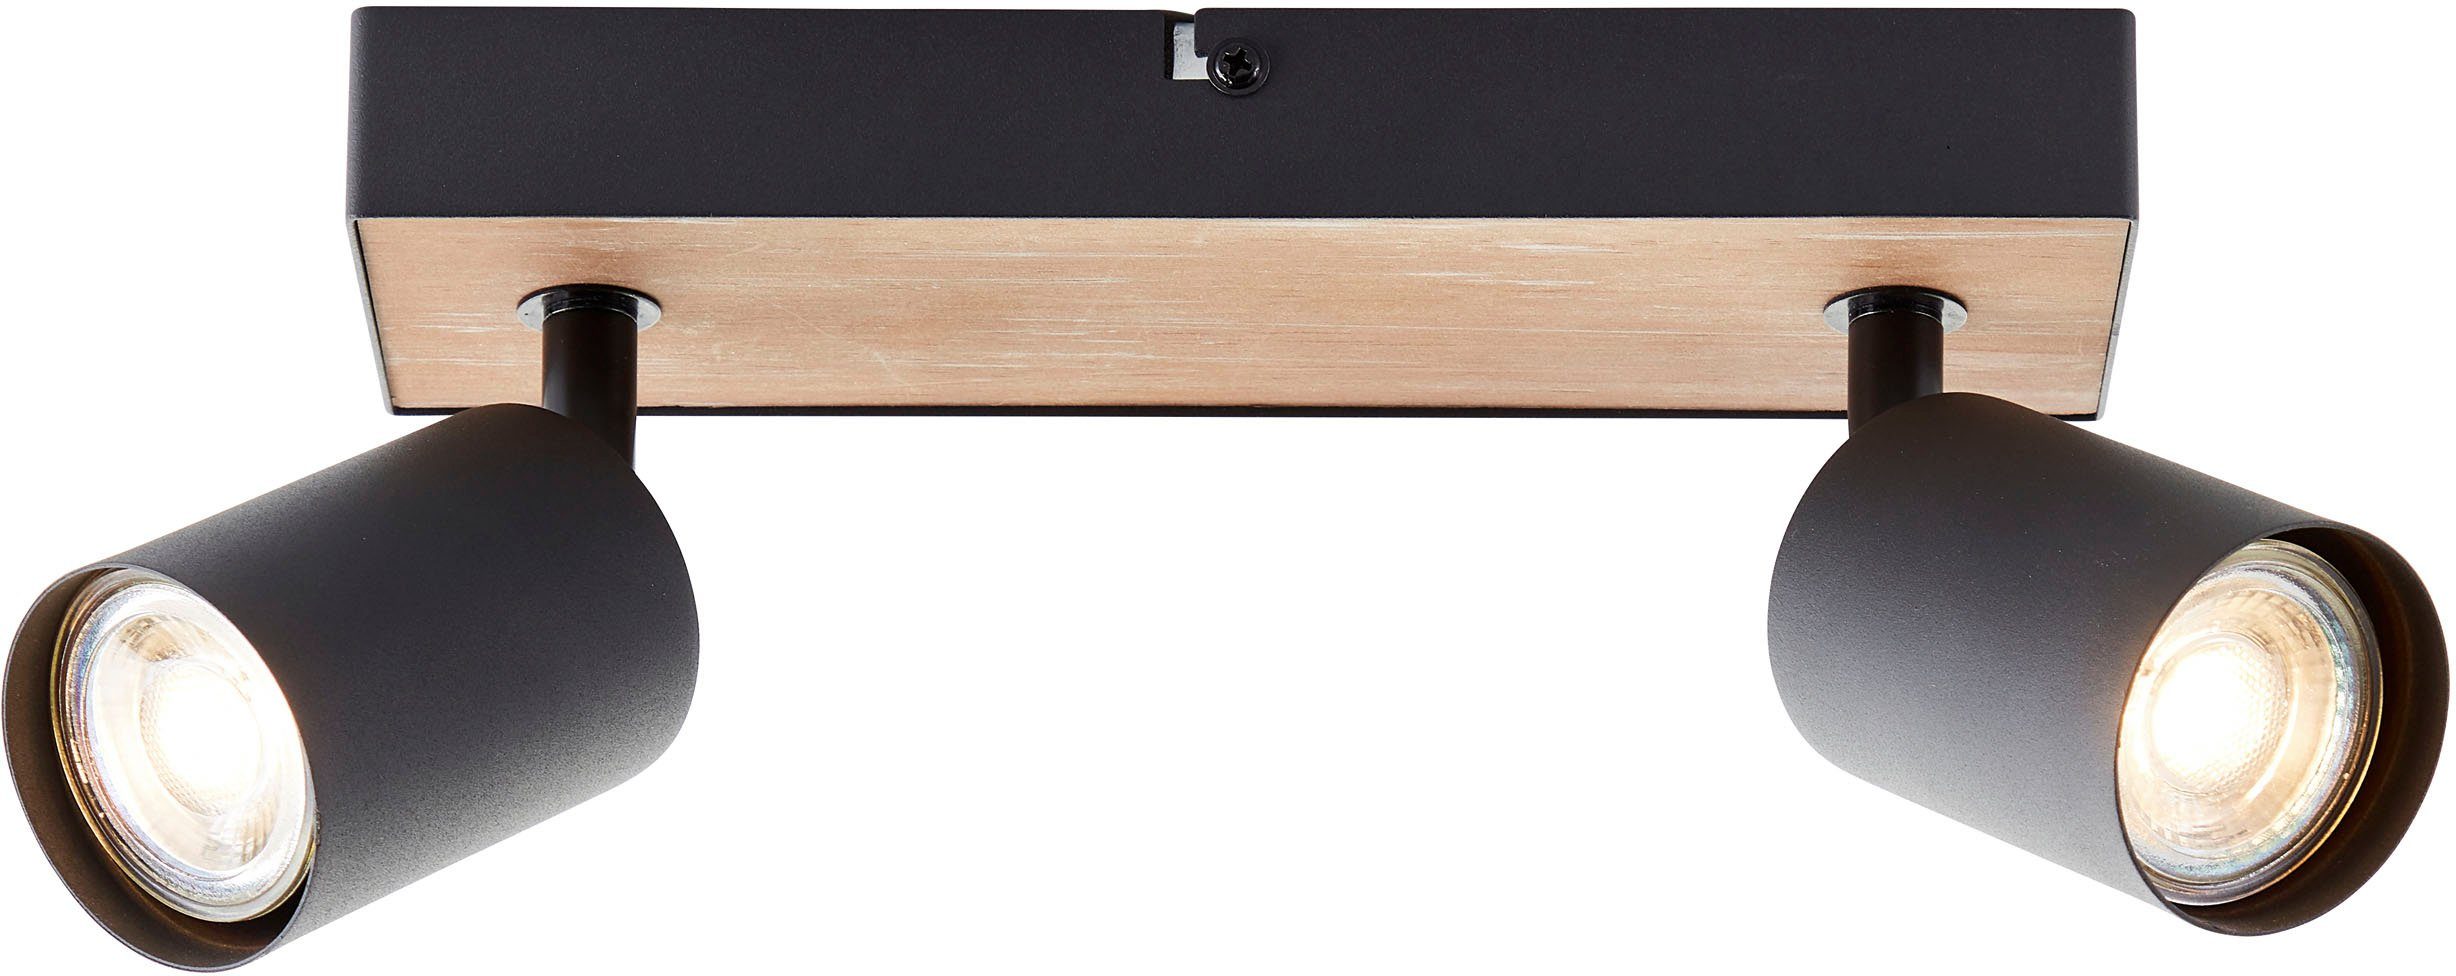 Deckenstrahler Jello 345lm, Metall/Holz LED 15x24x8 Warmweiß, schwenkbar, Spotbalken wechselbar, GU10, Brilliant Wood, 3000K, cm,